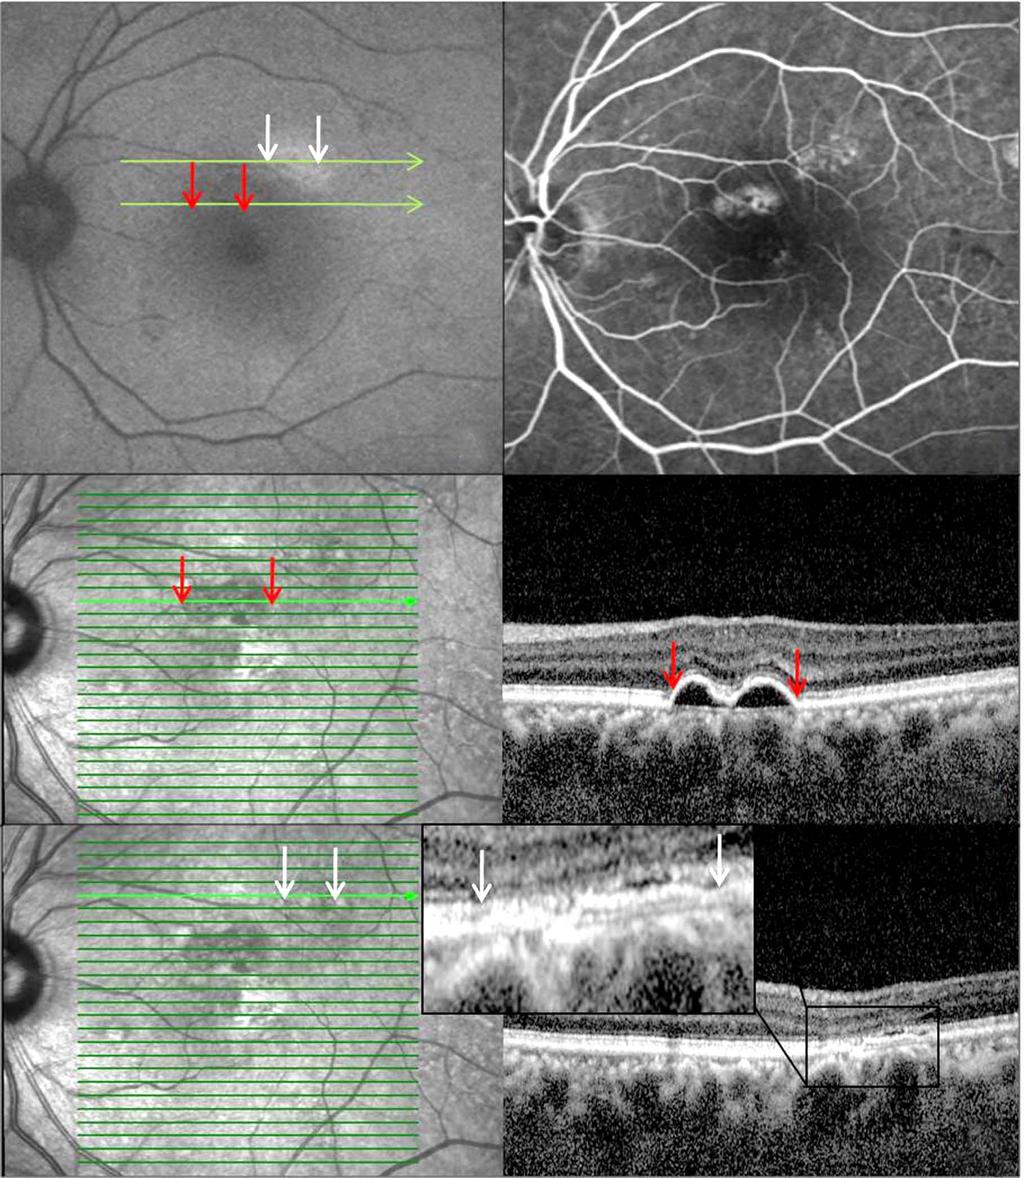 - 오인석 장지혜 : 만성 중심장액맥락망막병증에서의 망막외층변성 - A B C D Figure 3. Patient with 16 months of history of central serous chorioretinopathy in the left eye (Case 1).